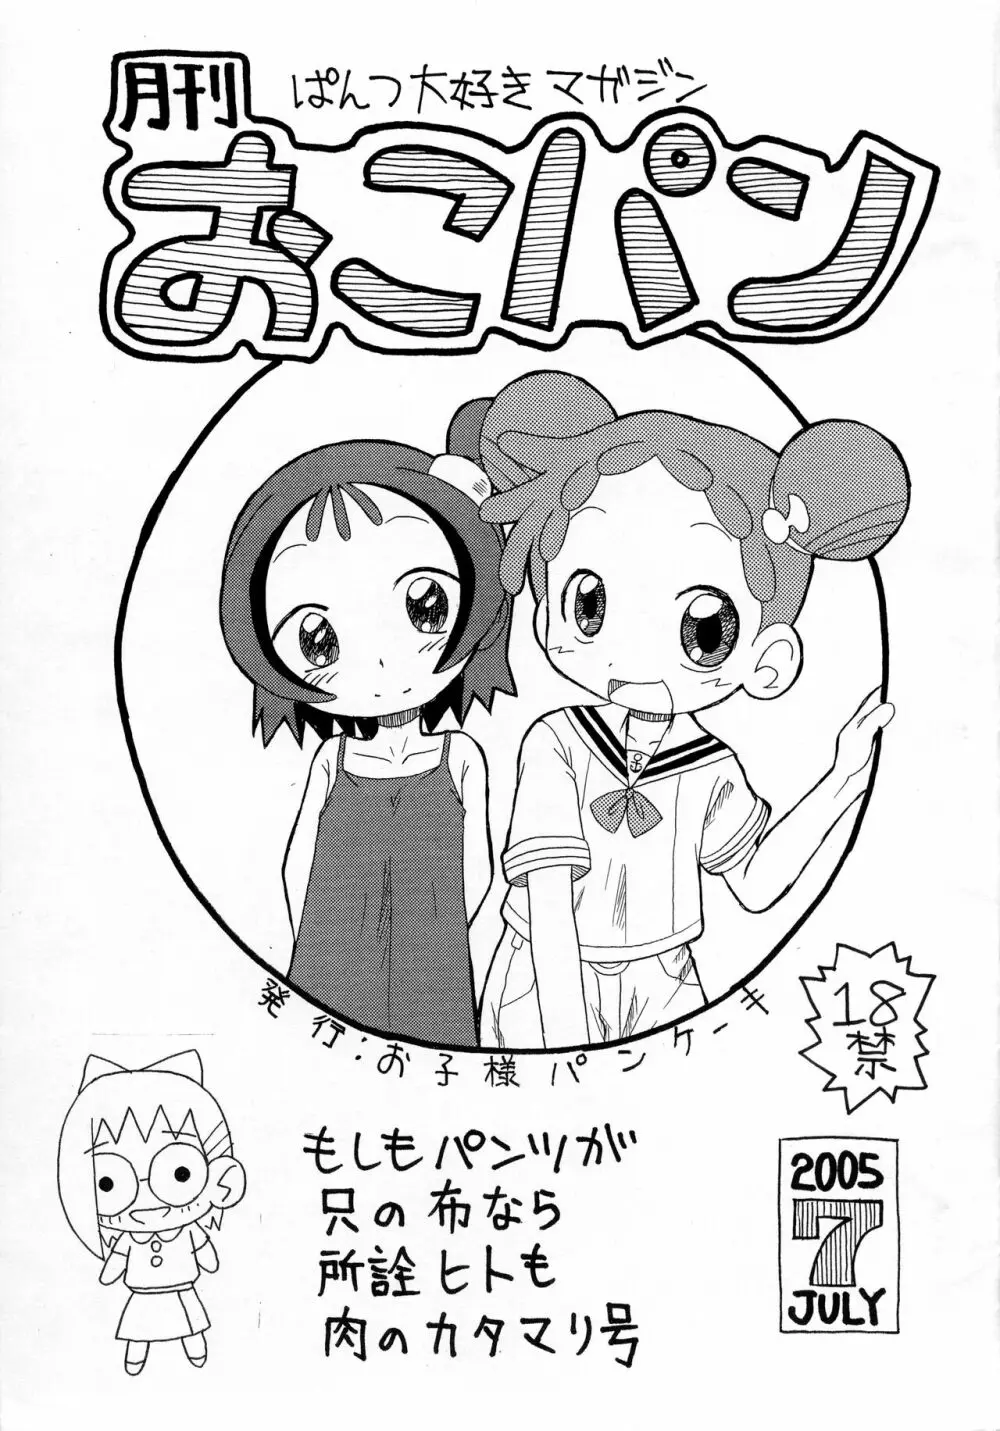 月刊おこパン 2005 July